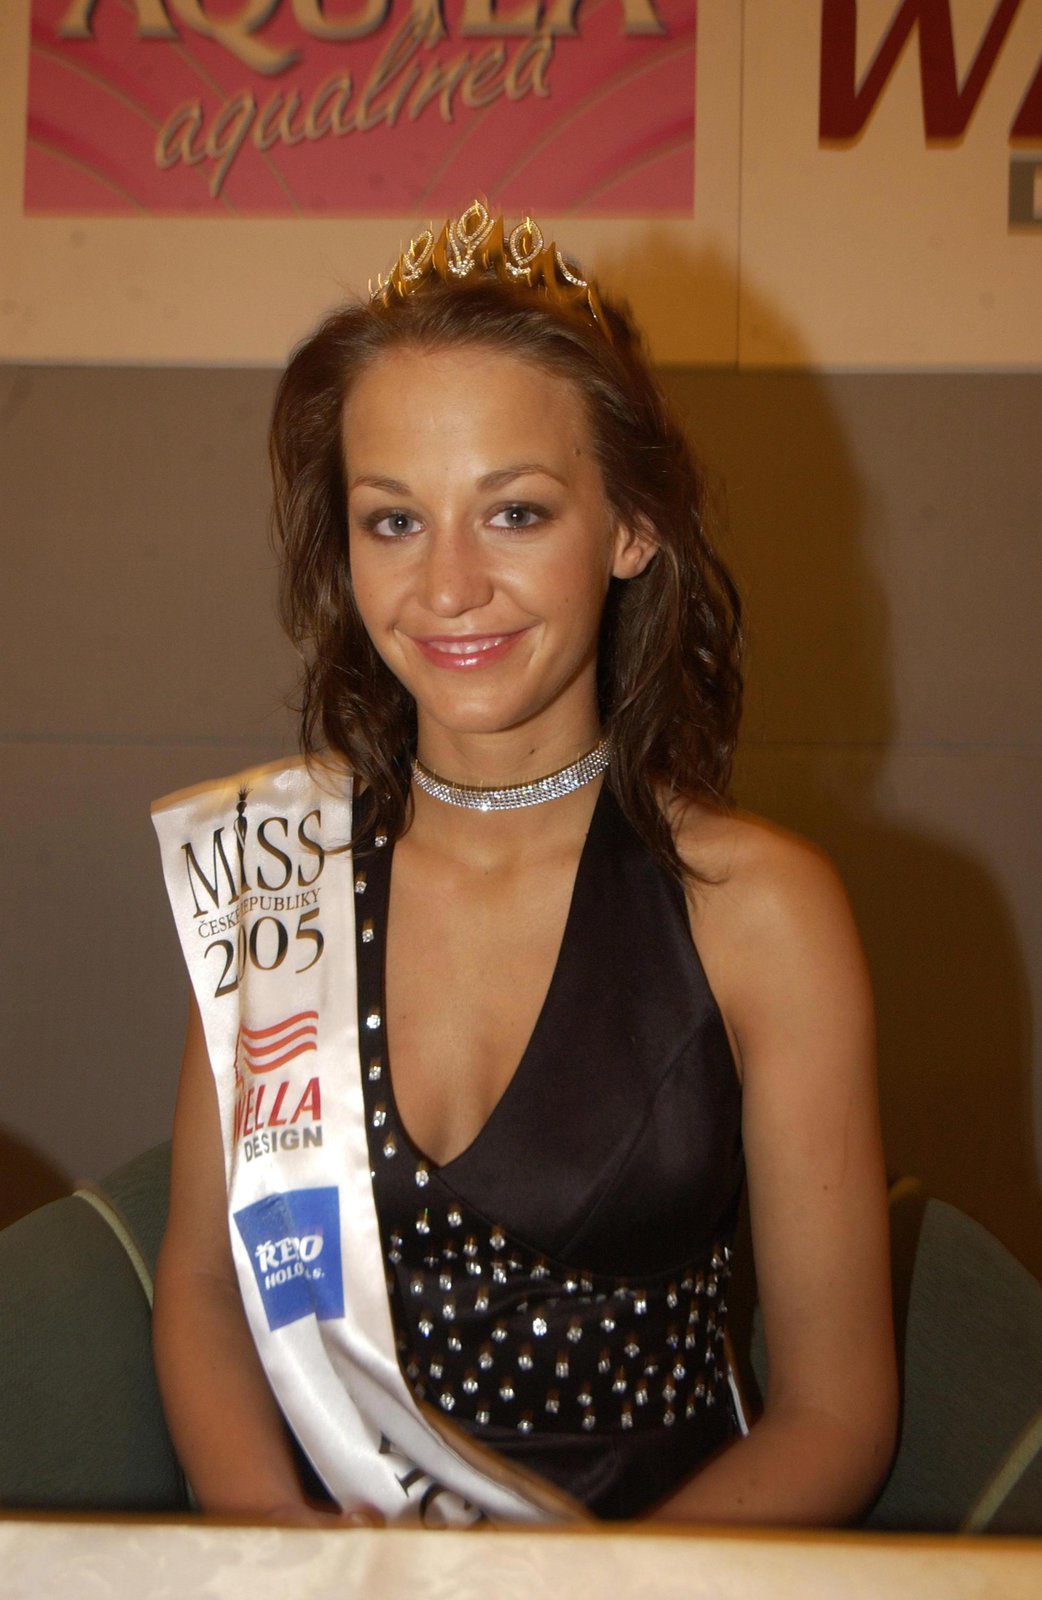 Tehdejší 2. vicemiss 2005 Agáta Hanychová měla v létě 2005 úlet se slavným českým hokejistou.